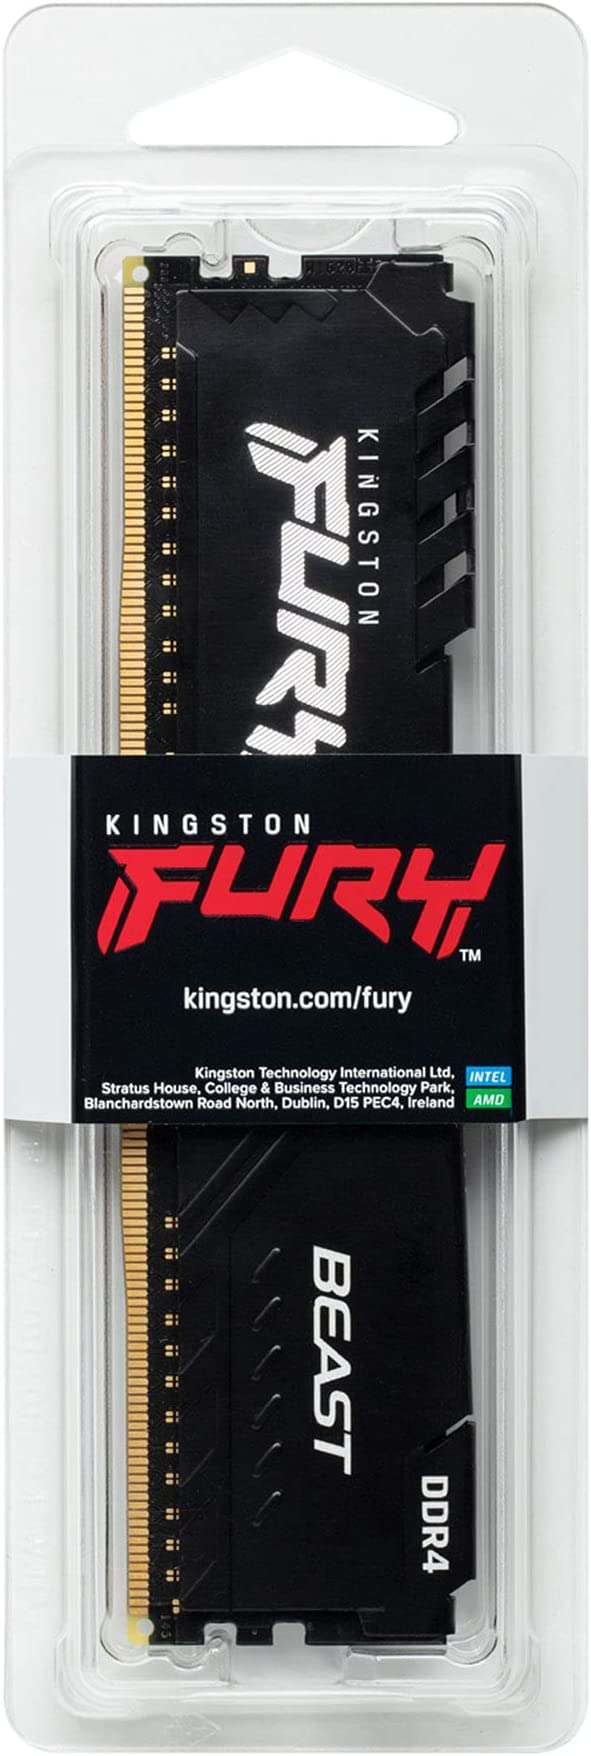 KINGSTON FURY BEAST 32GB 3200MT/s DDR4 CL16 DIMM BLACK -KF432C16BB/32